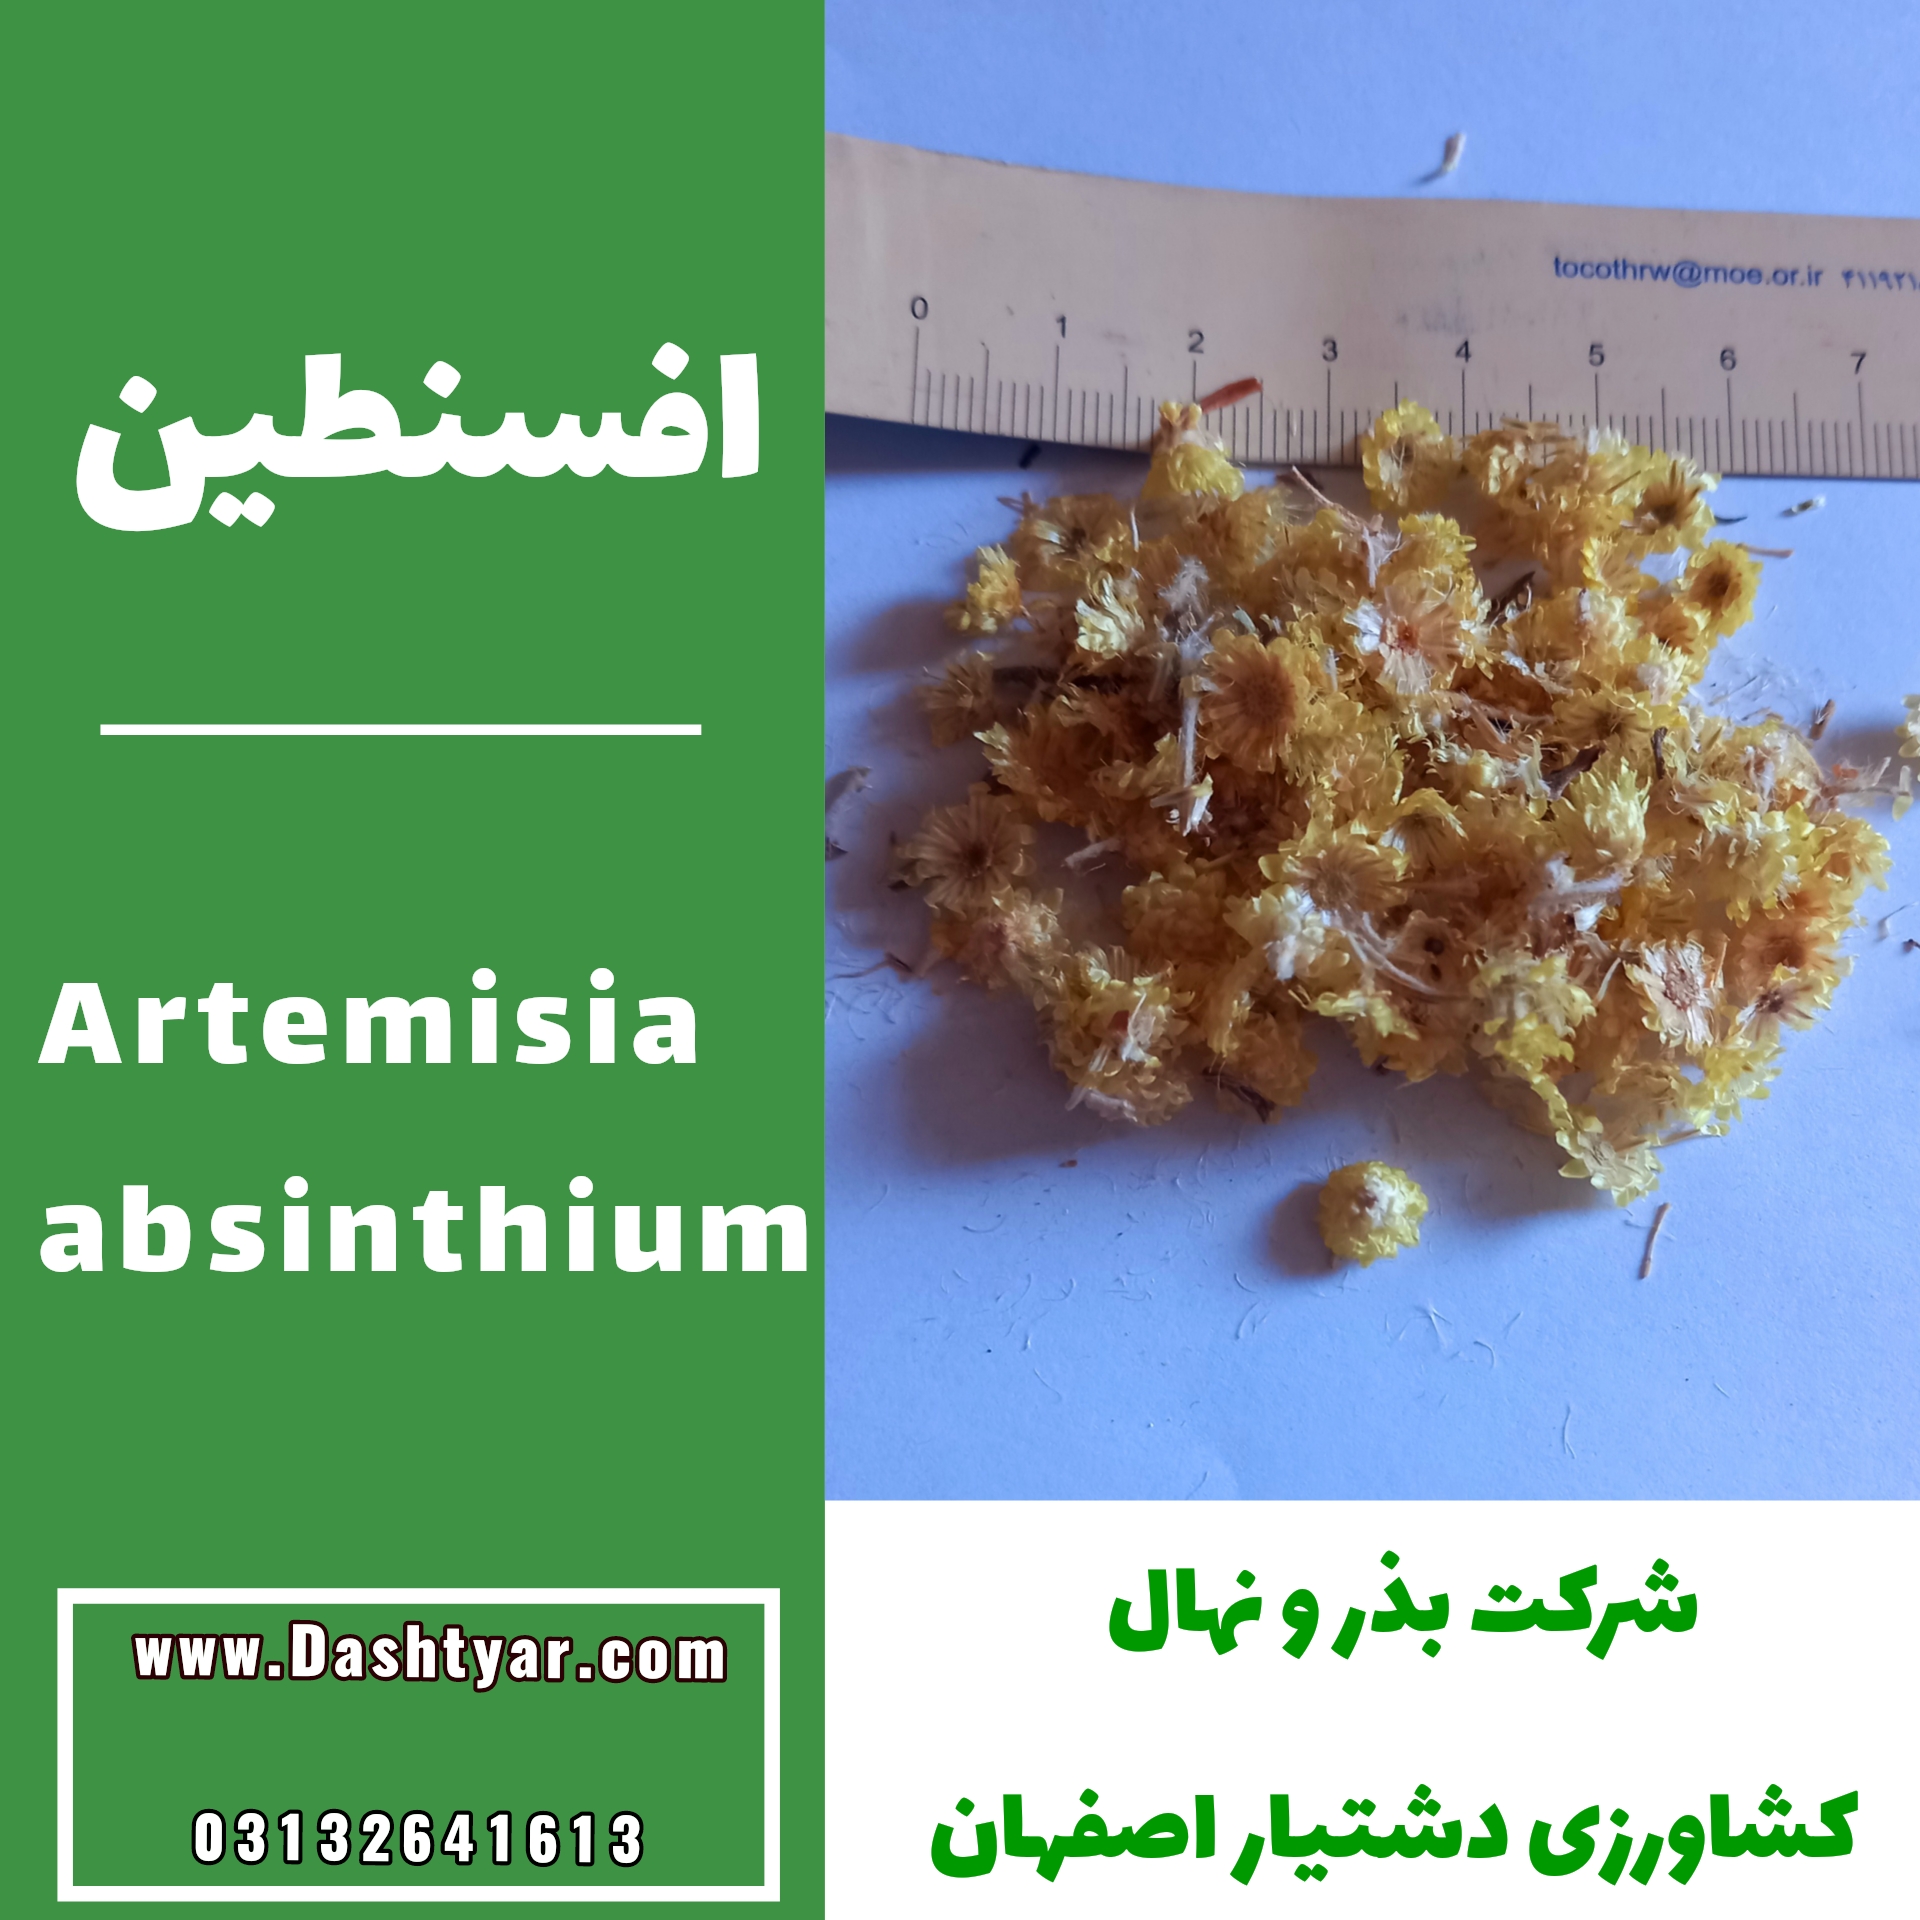 بذر افسنطین(artemisia absinthium)